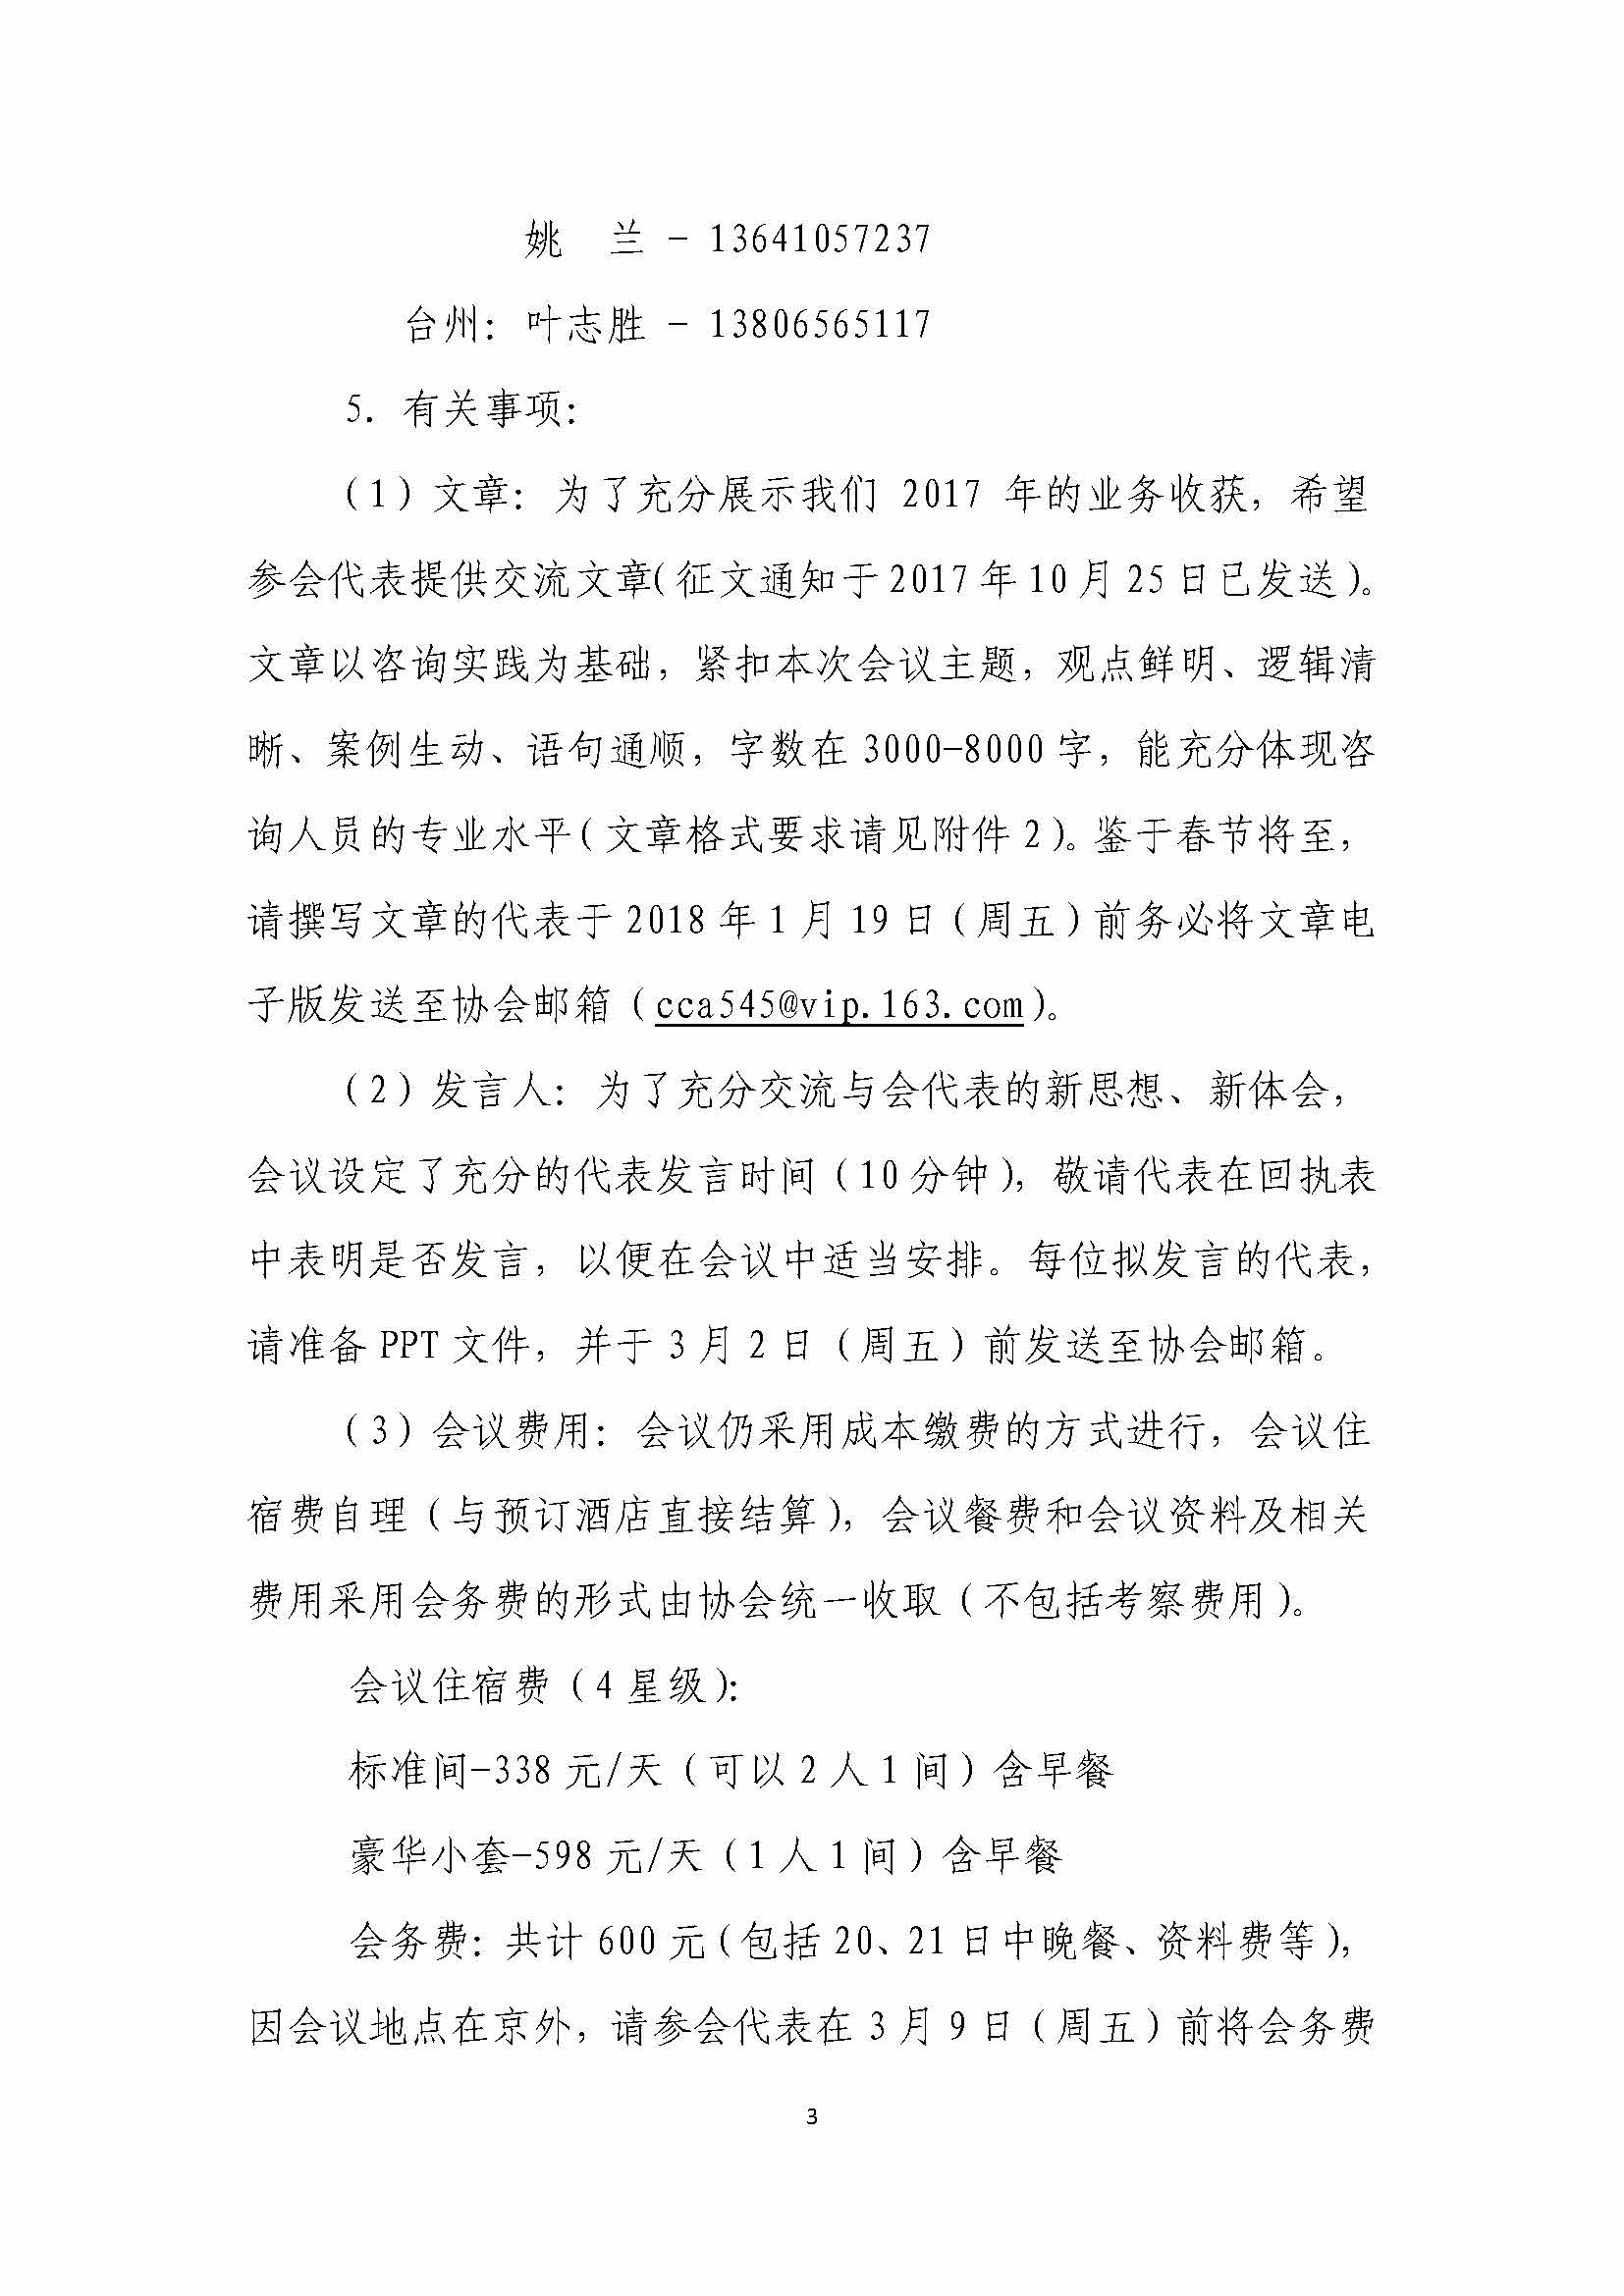 关于召开中国科技咨询协会2017年年会的通知_页面_03.jpg